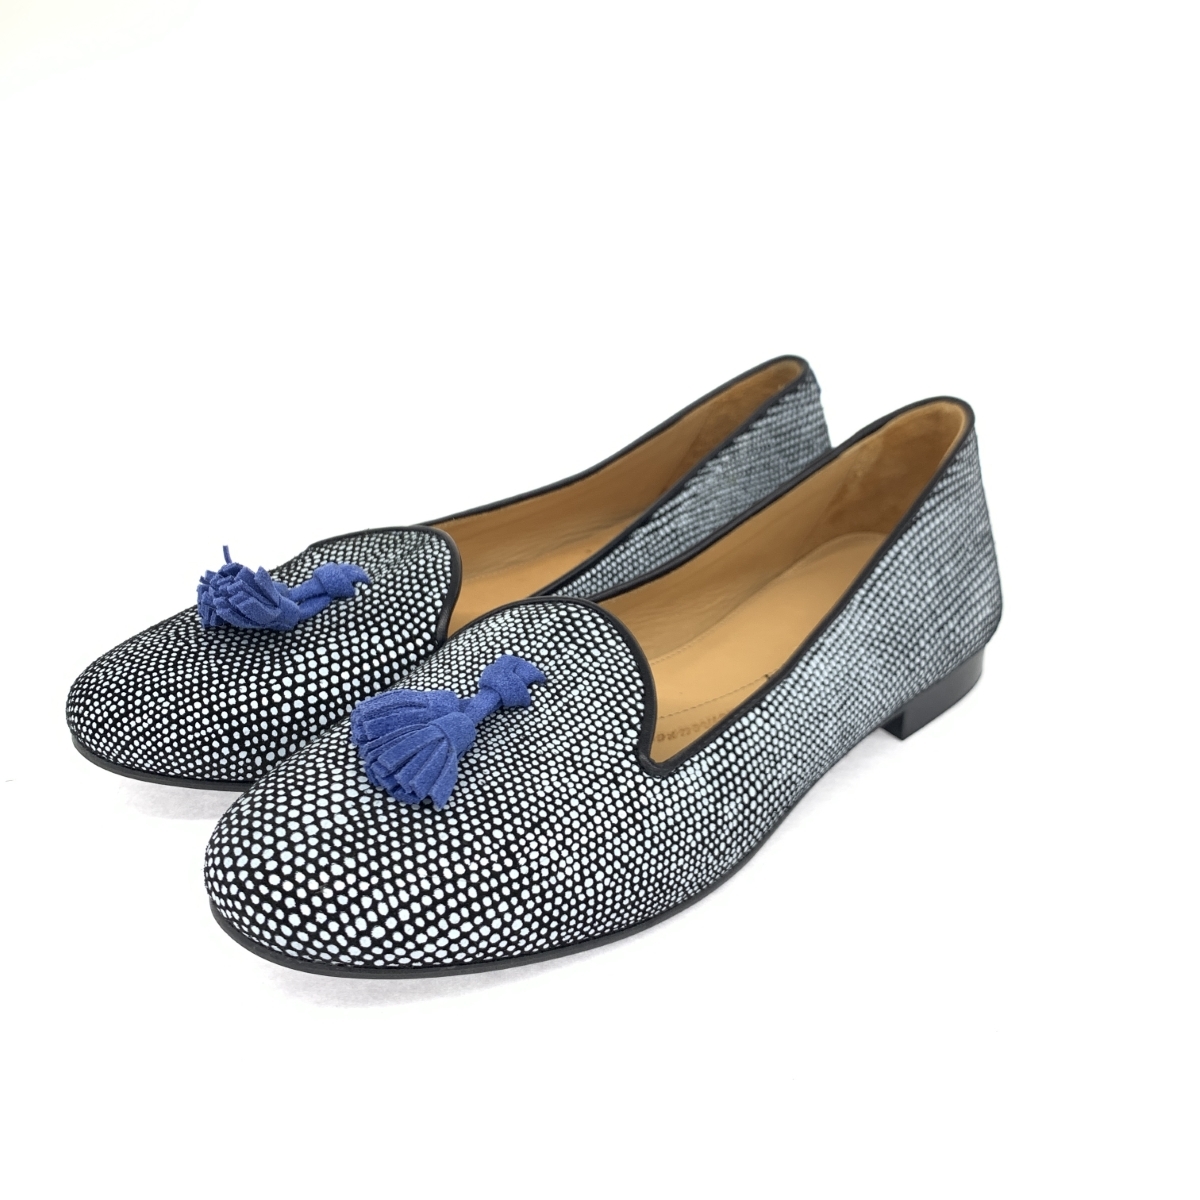  хороший *Chatelles автомобиль teru туфли-лодочки 37* темно-синий точка кисточка женский обувь обувь shoes